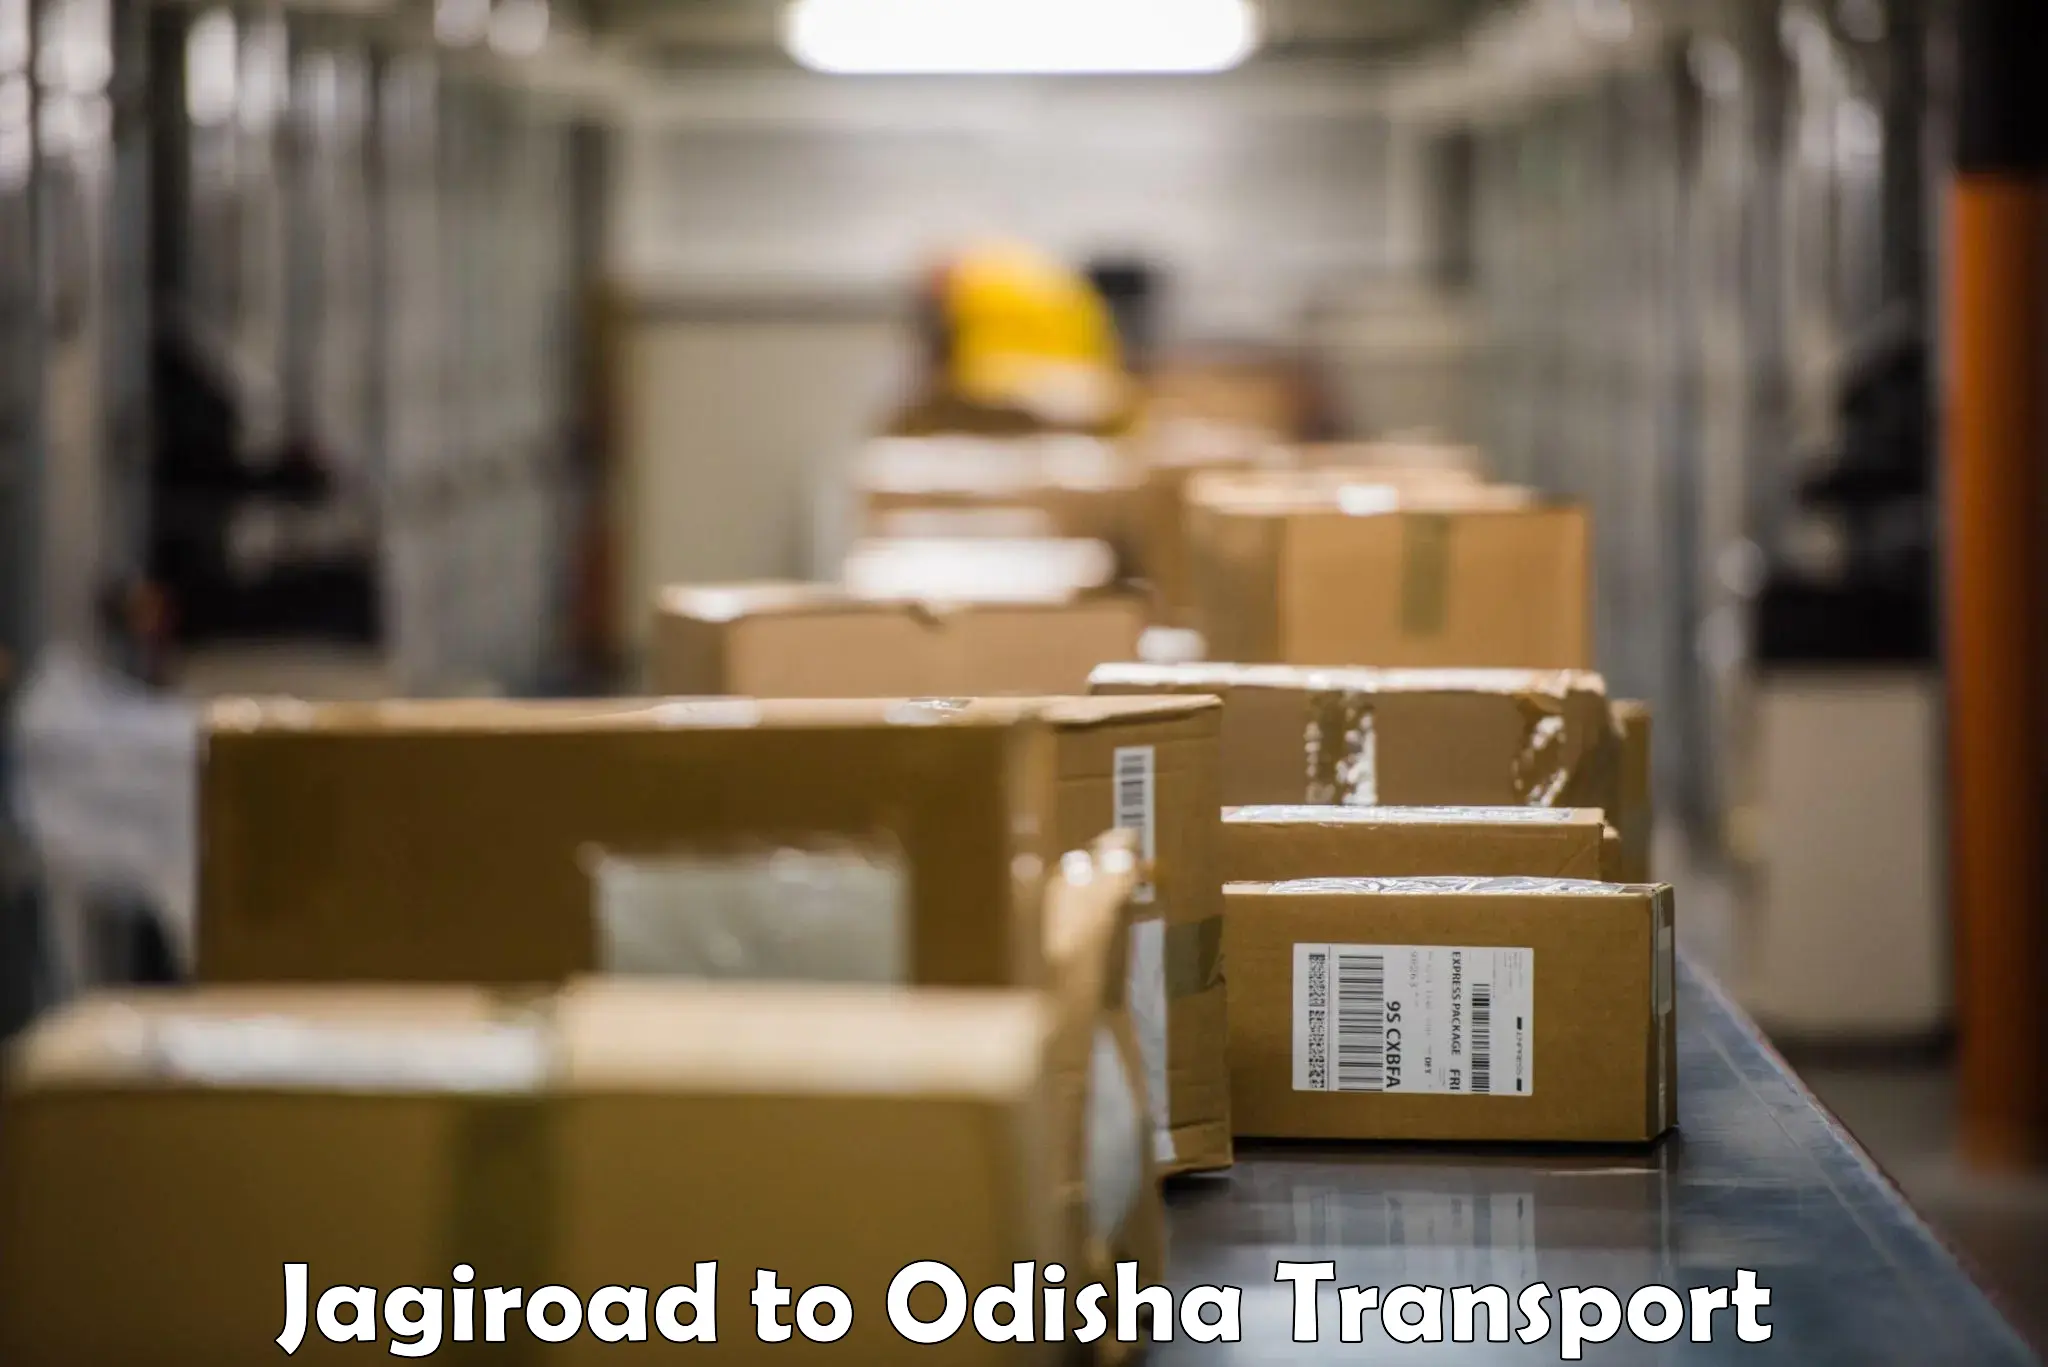 Bike shipping service Jagiroad to Odisha